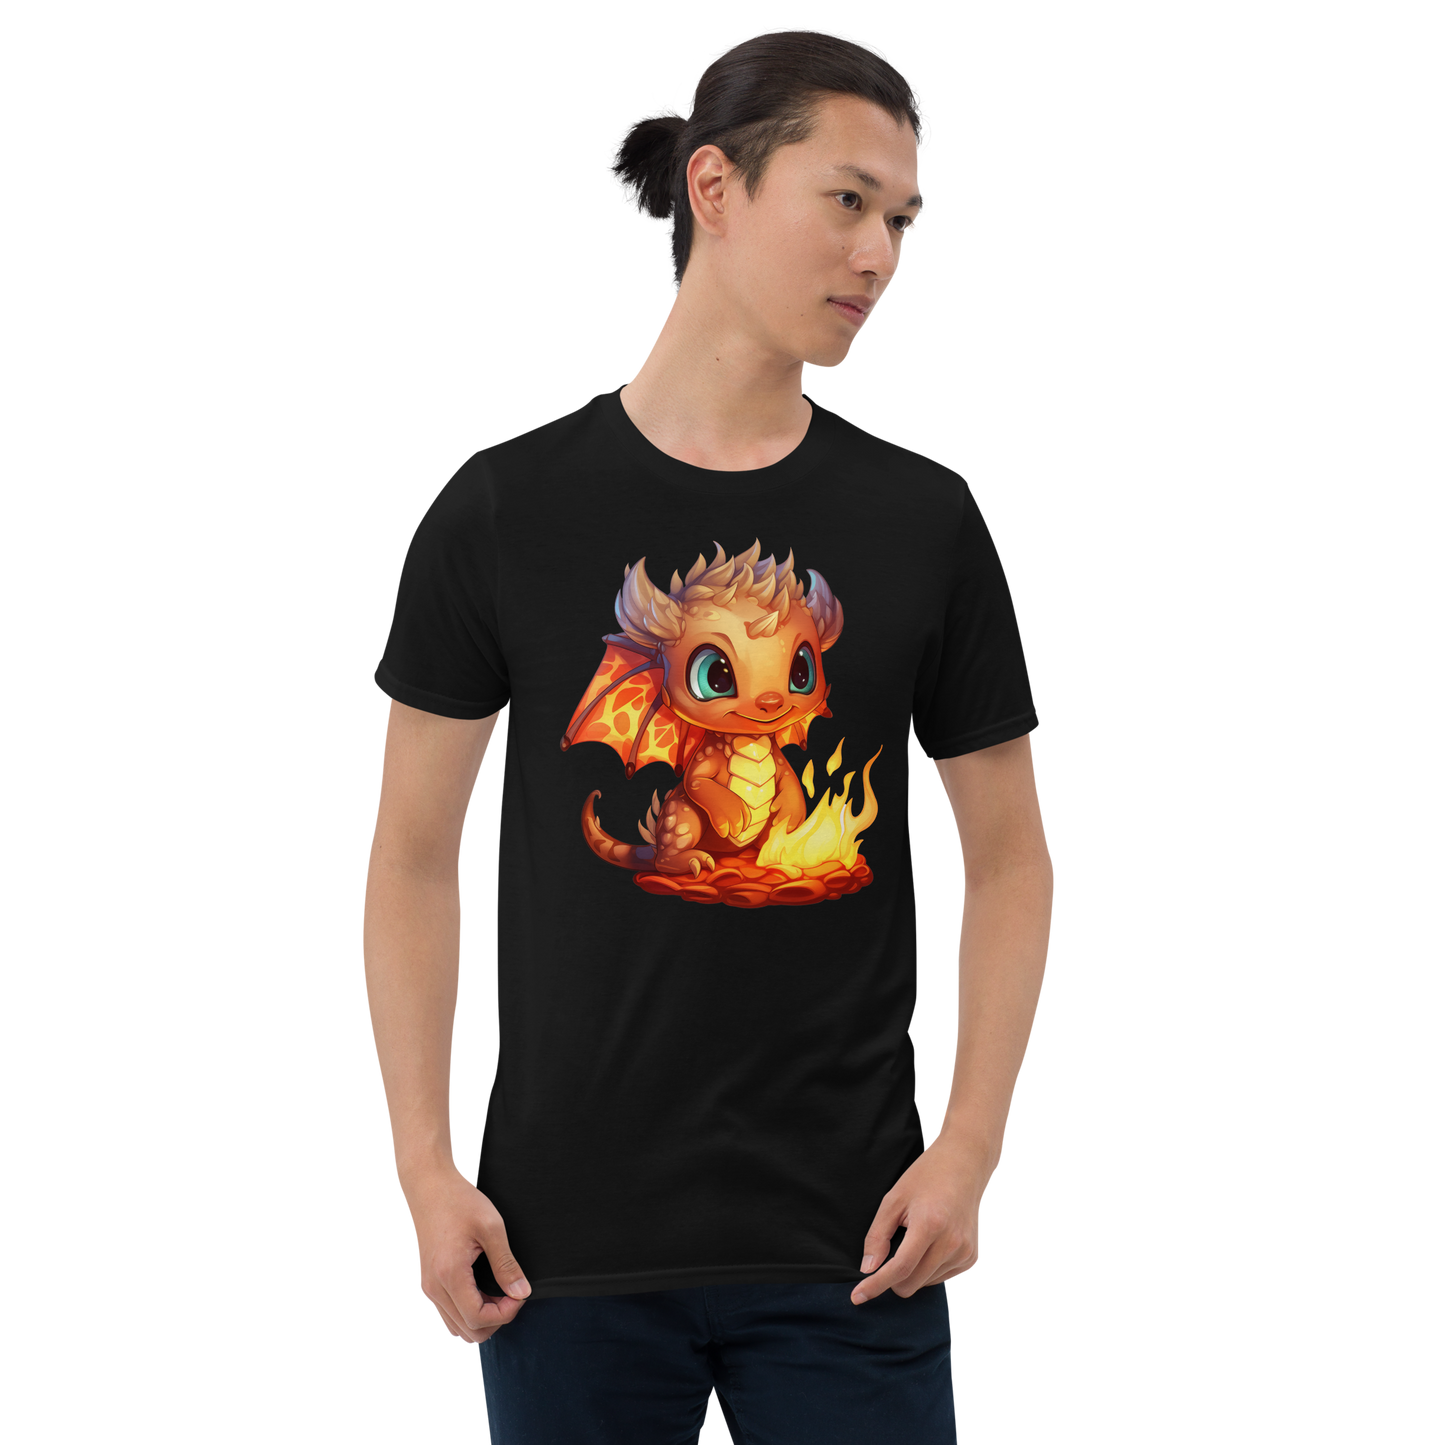 Short-Sleeve T-Shirt - Fire dragon